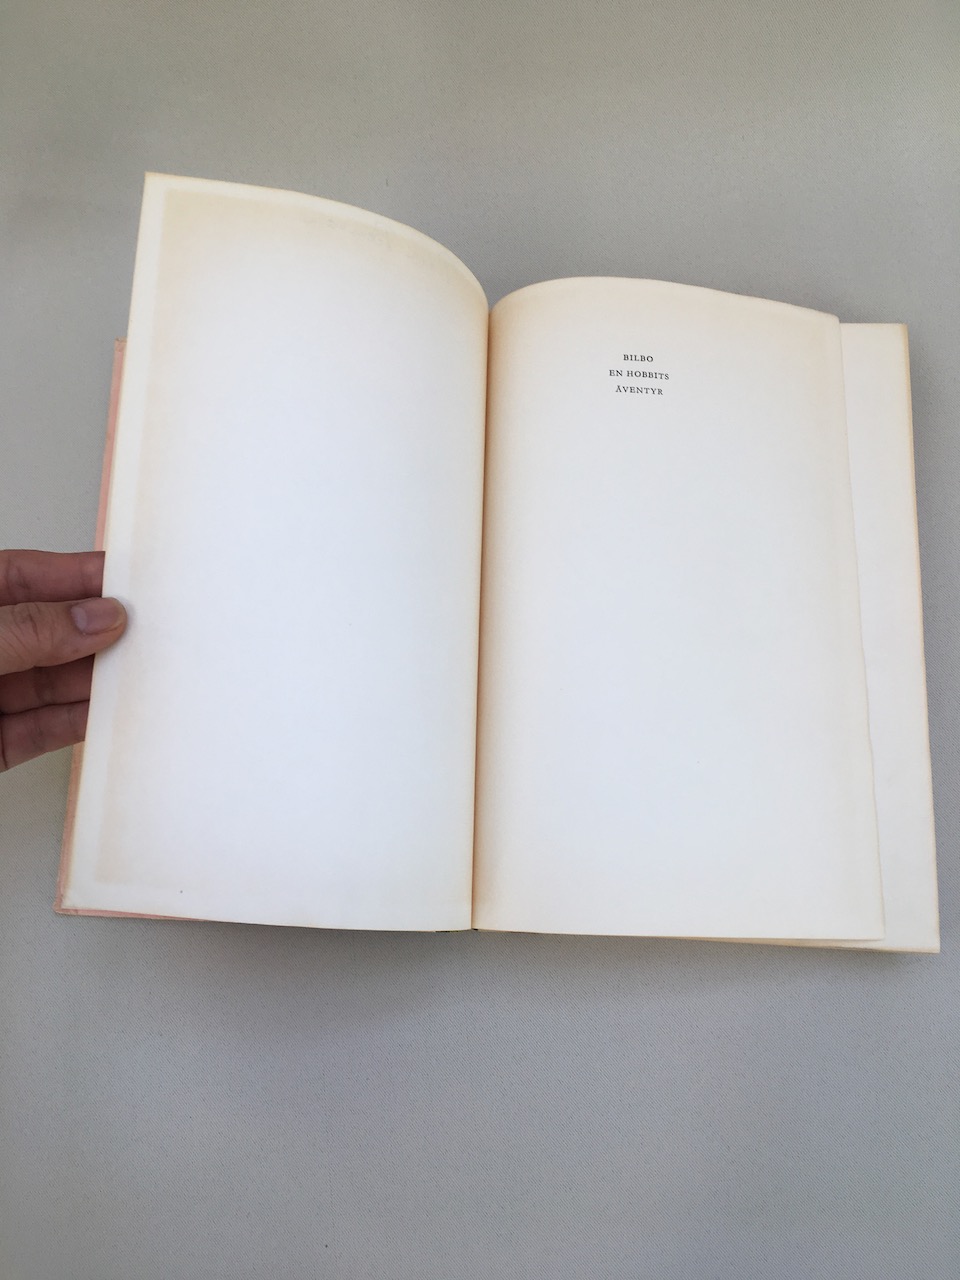 Bilbo En Hobbits Aventyr, 1962, First printing, First official Swedish Translation published by Raben and Sjogren 10